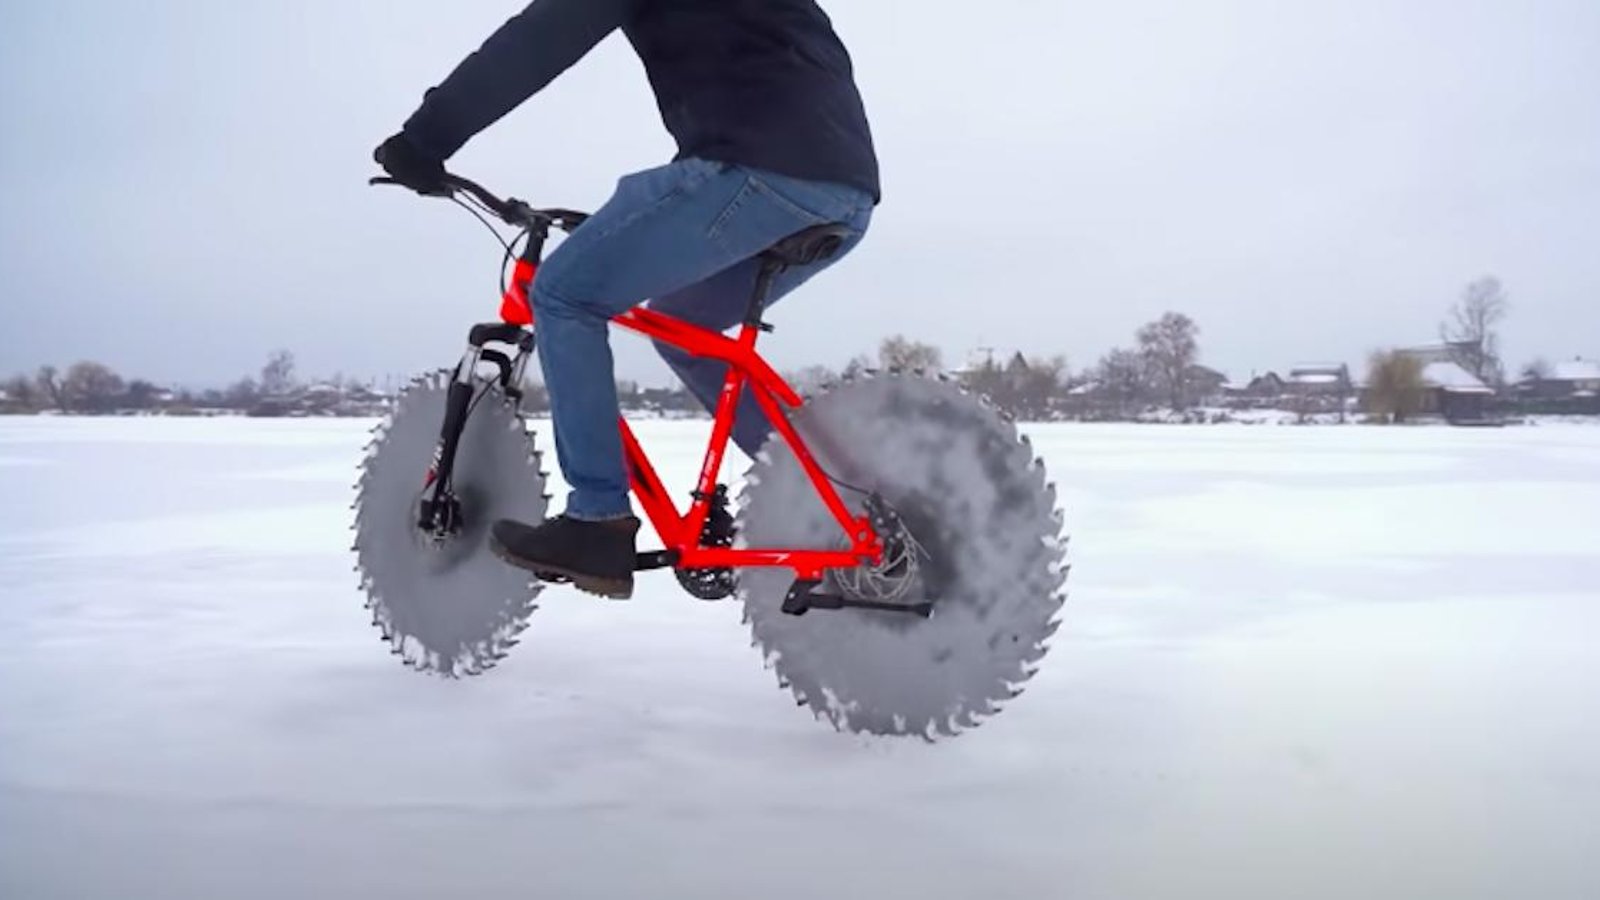 Pour pédaler sur un lac gelé sans déraper, il remplace les roues de son vélo de manière très inusitée!